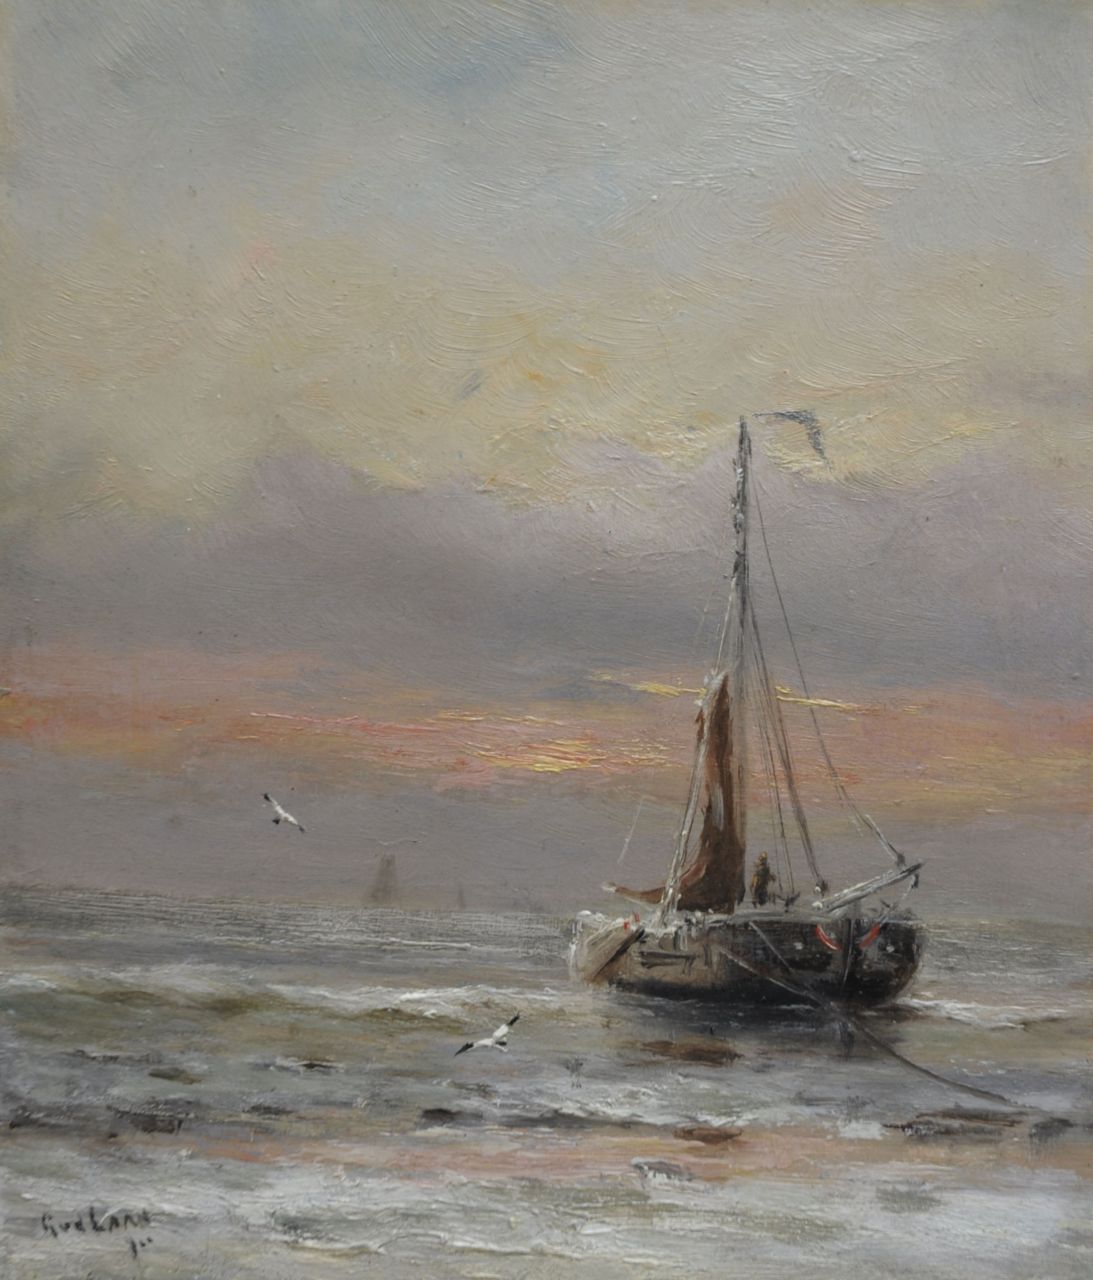 Laan G. van der | Gerard van der Laan,  Winter at the beach, Öl auf Malereifaser 19,3 x 16,9 cm, signed l.l.